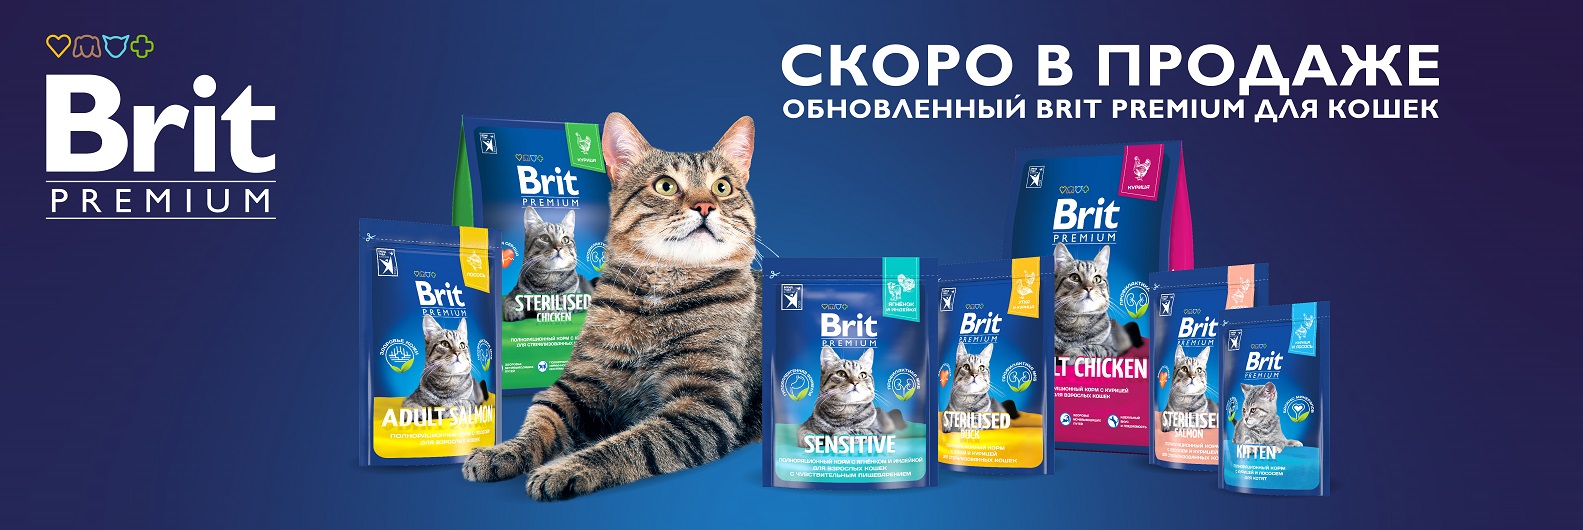 Обновленный Brit Premium для кошек скоро в продаже